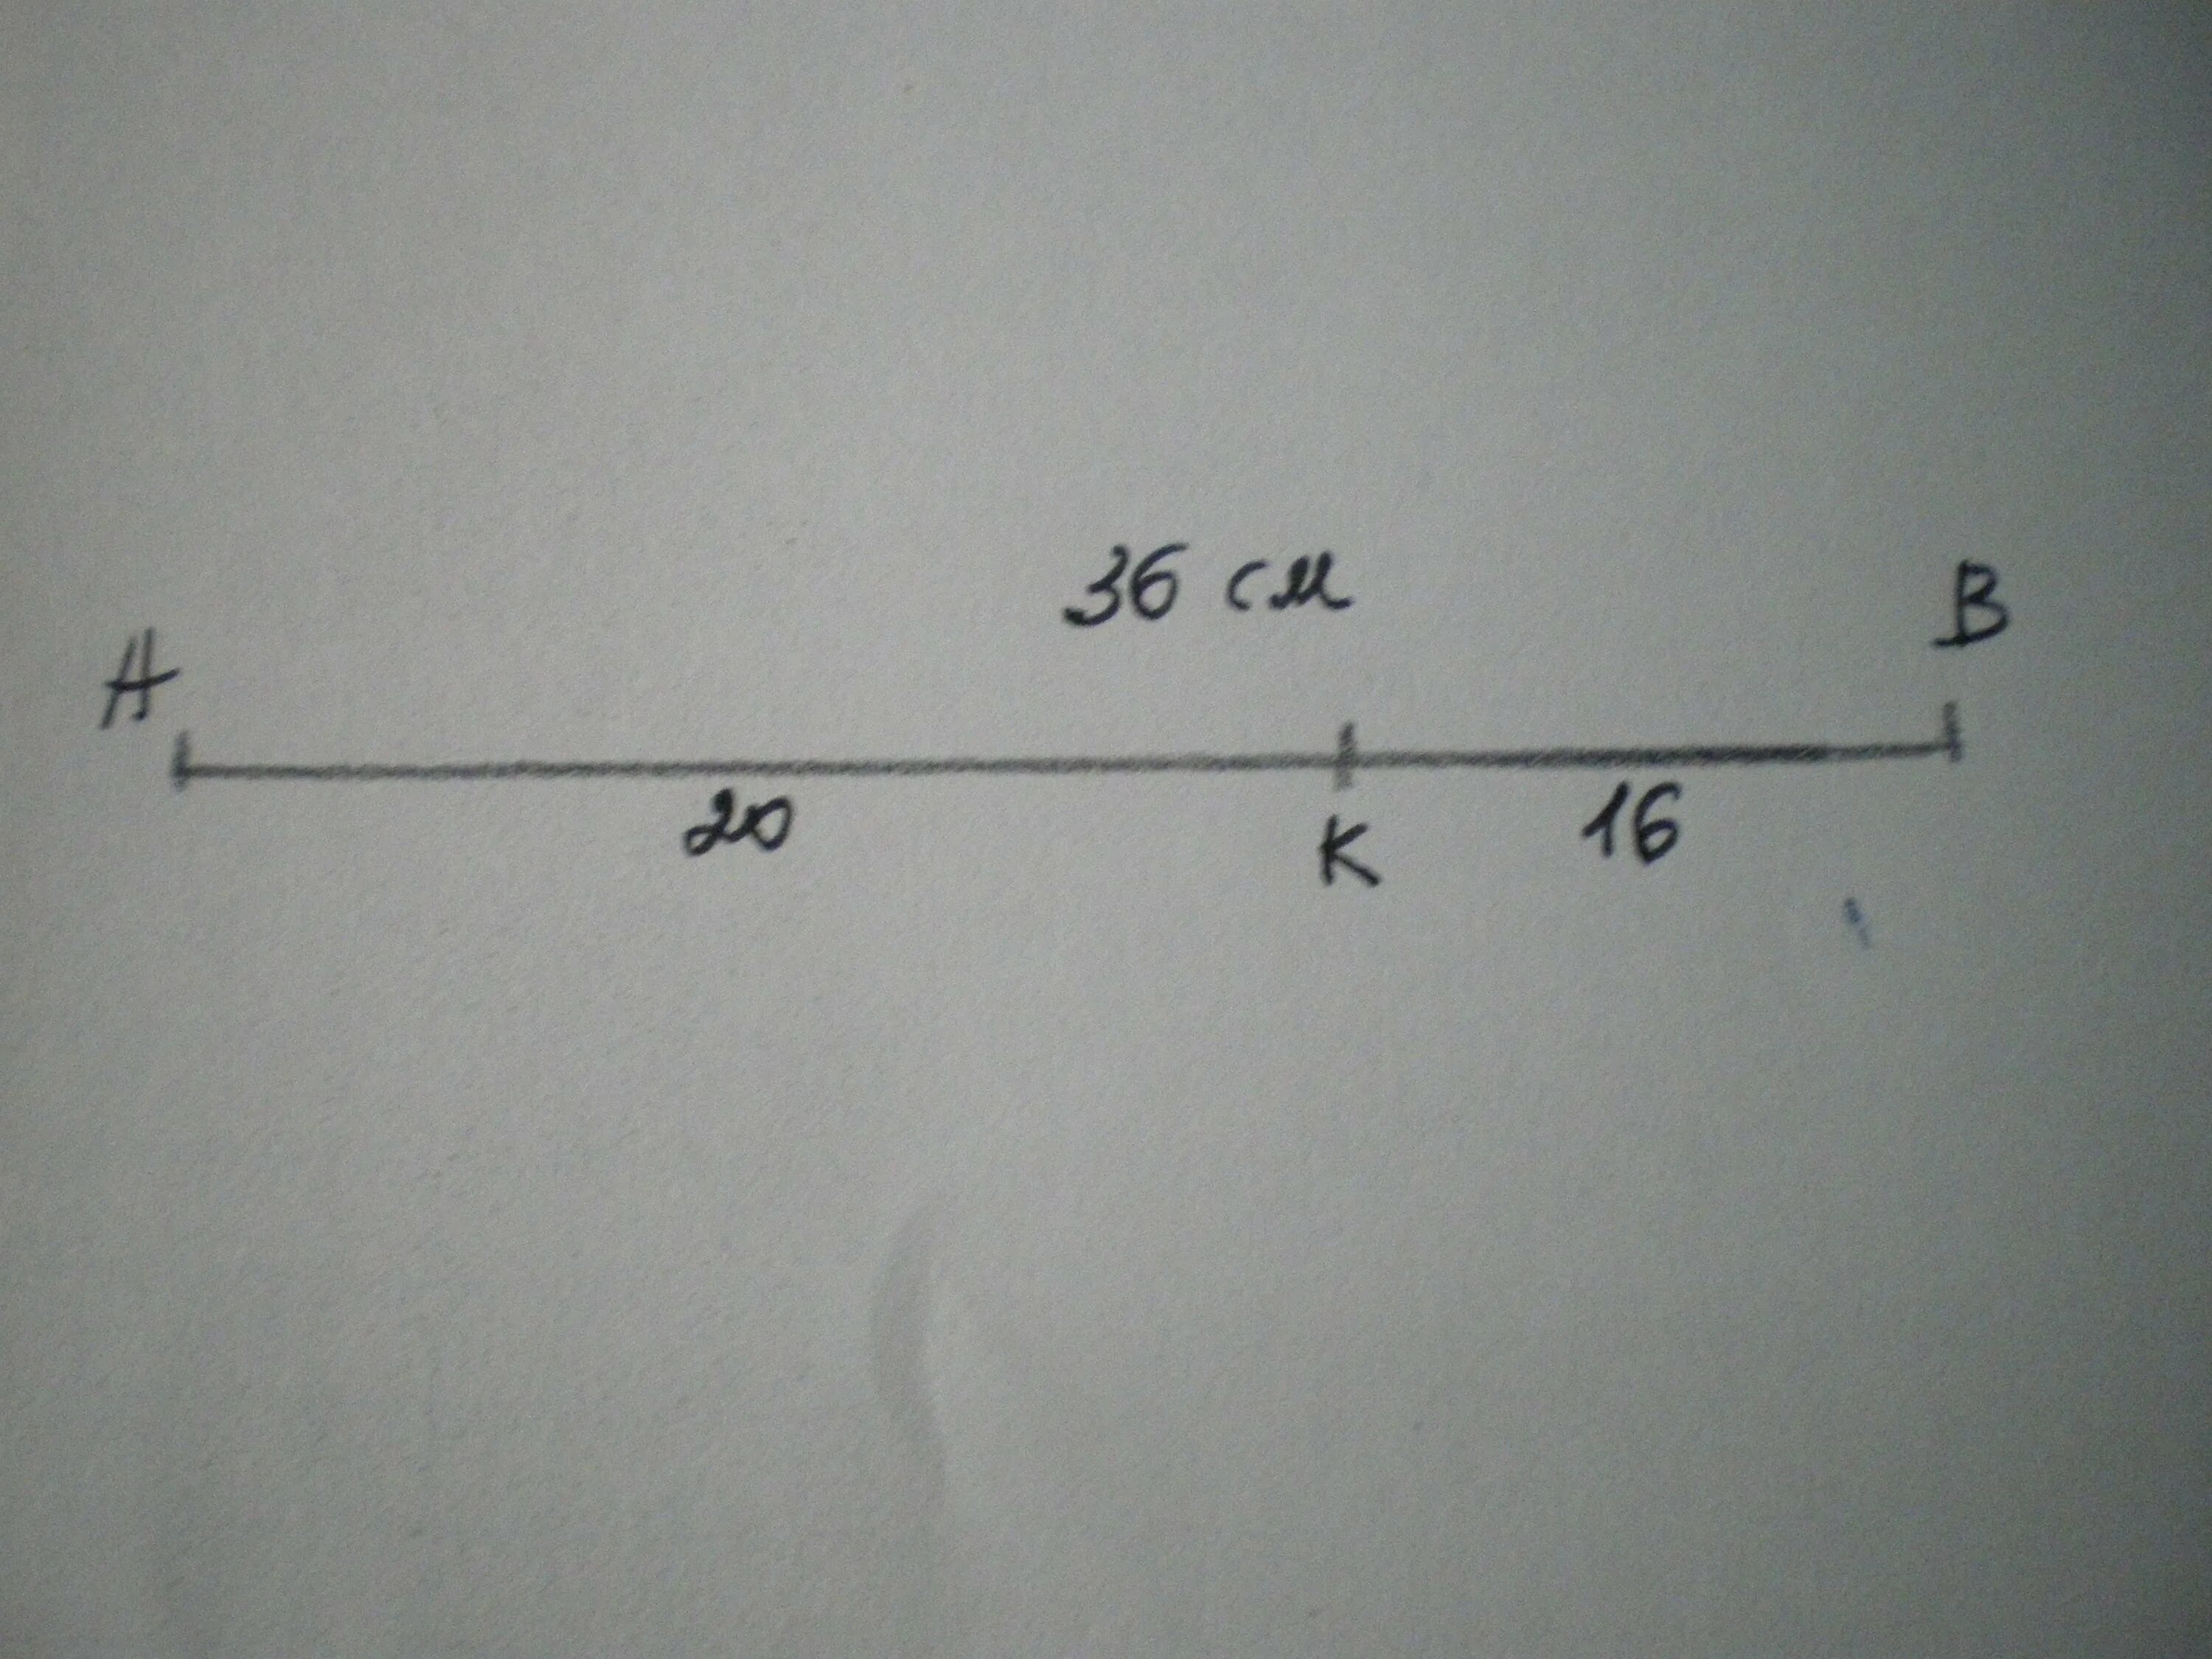 На прямой ав взята точка. На отрезке АВ длиной 36. На отрезке ab длиной 36 см. На отрезке 4 см. На отрезке АВ длиной 36 см взята точка к Найдите длины отрезков АК И ВК.